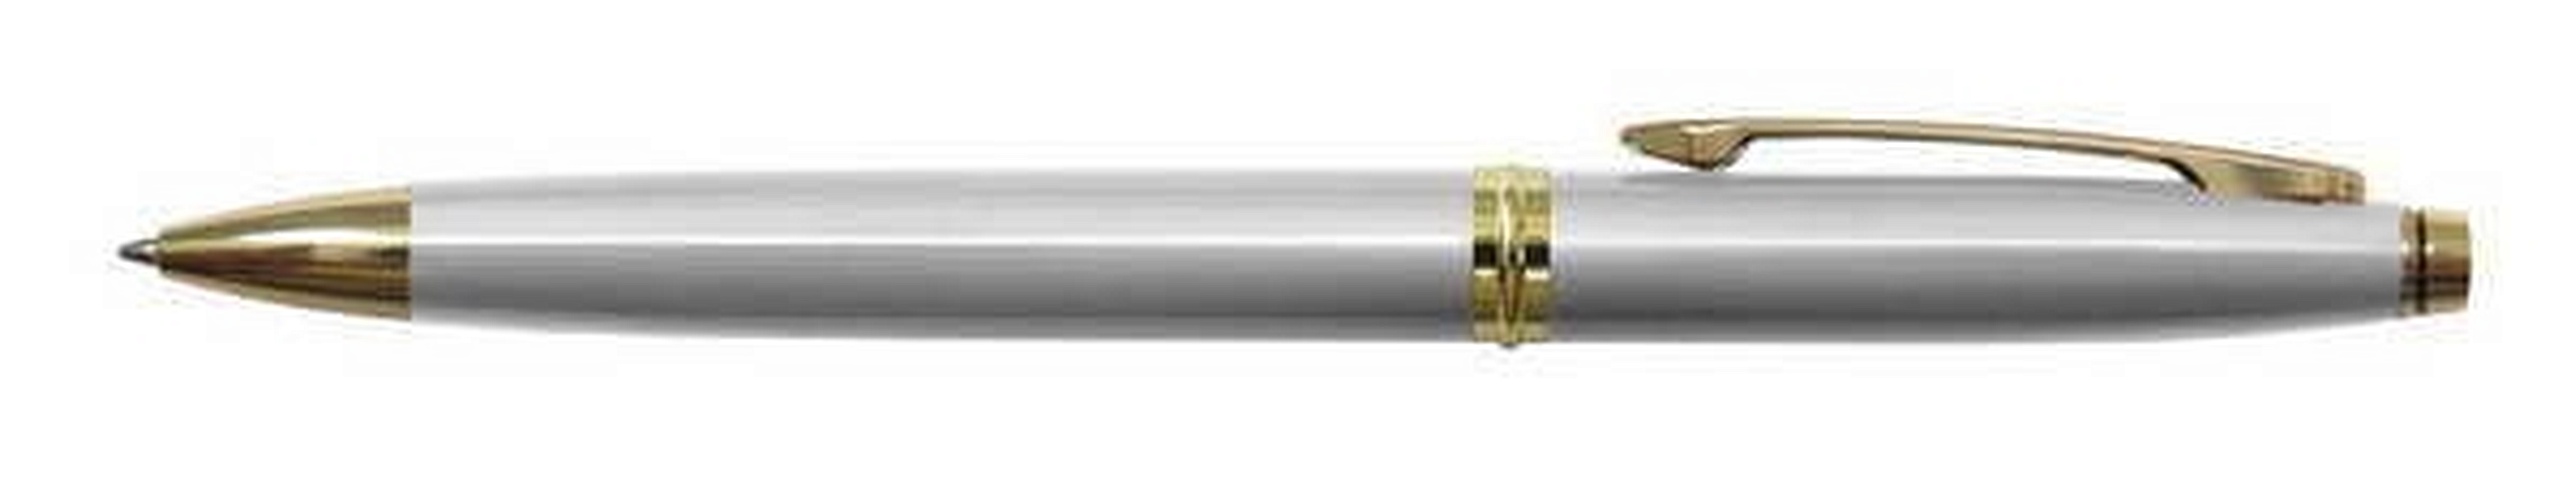 Ручка шариковая автоматическая синяя Silver Luxe 0,7мм, корпус металл.серебр, BERLINGO ручка шариковая автоматическая синяя silver standard 0 7мм корпус металл черный berlingo